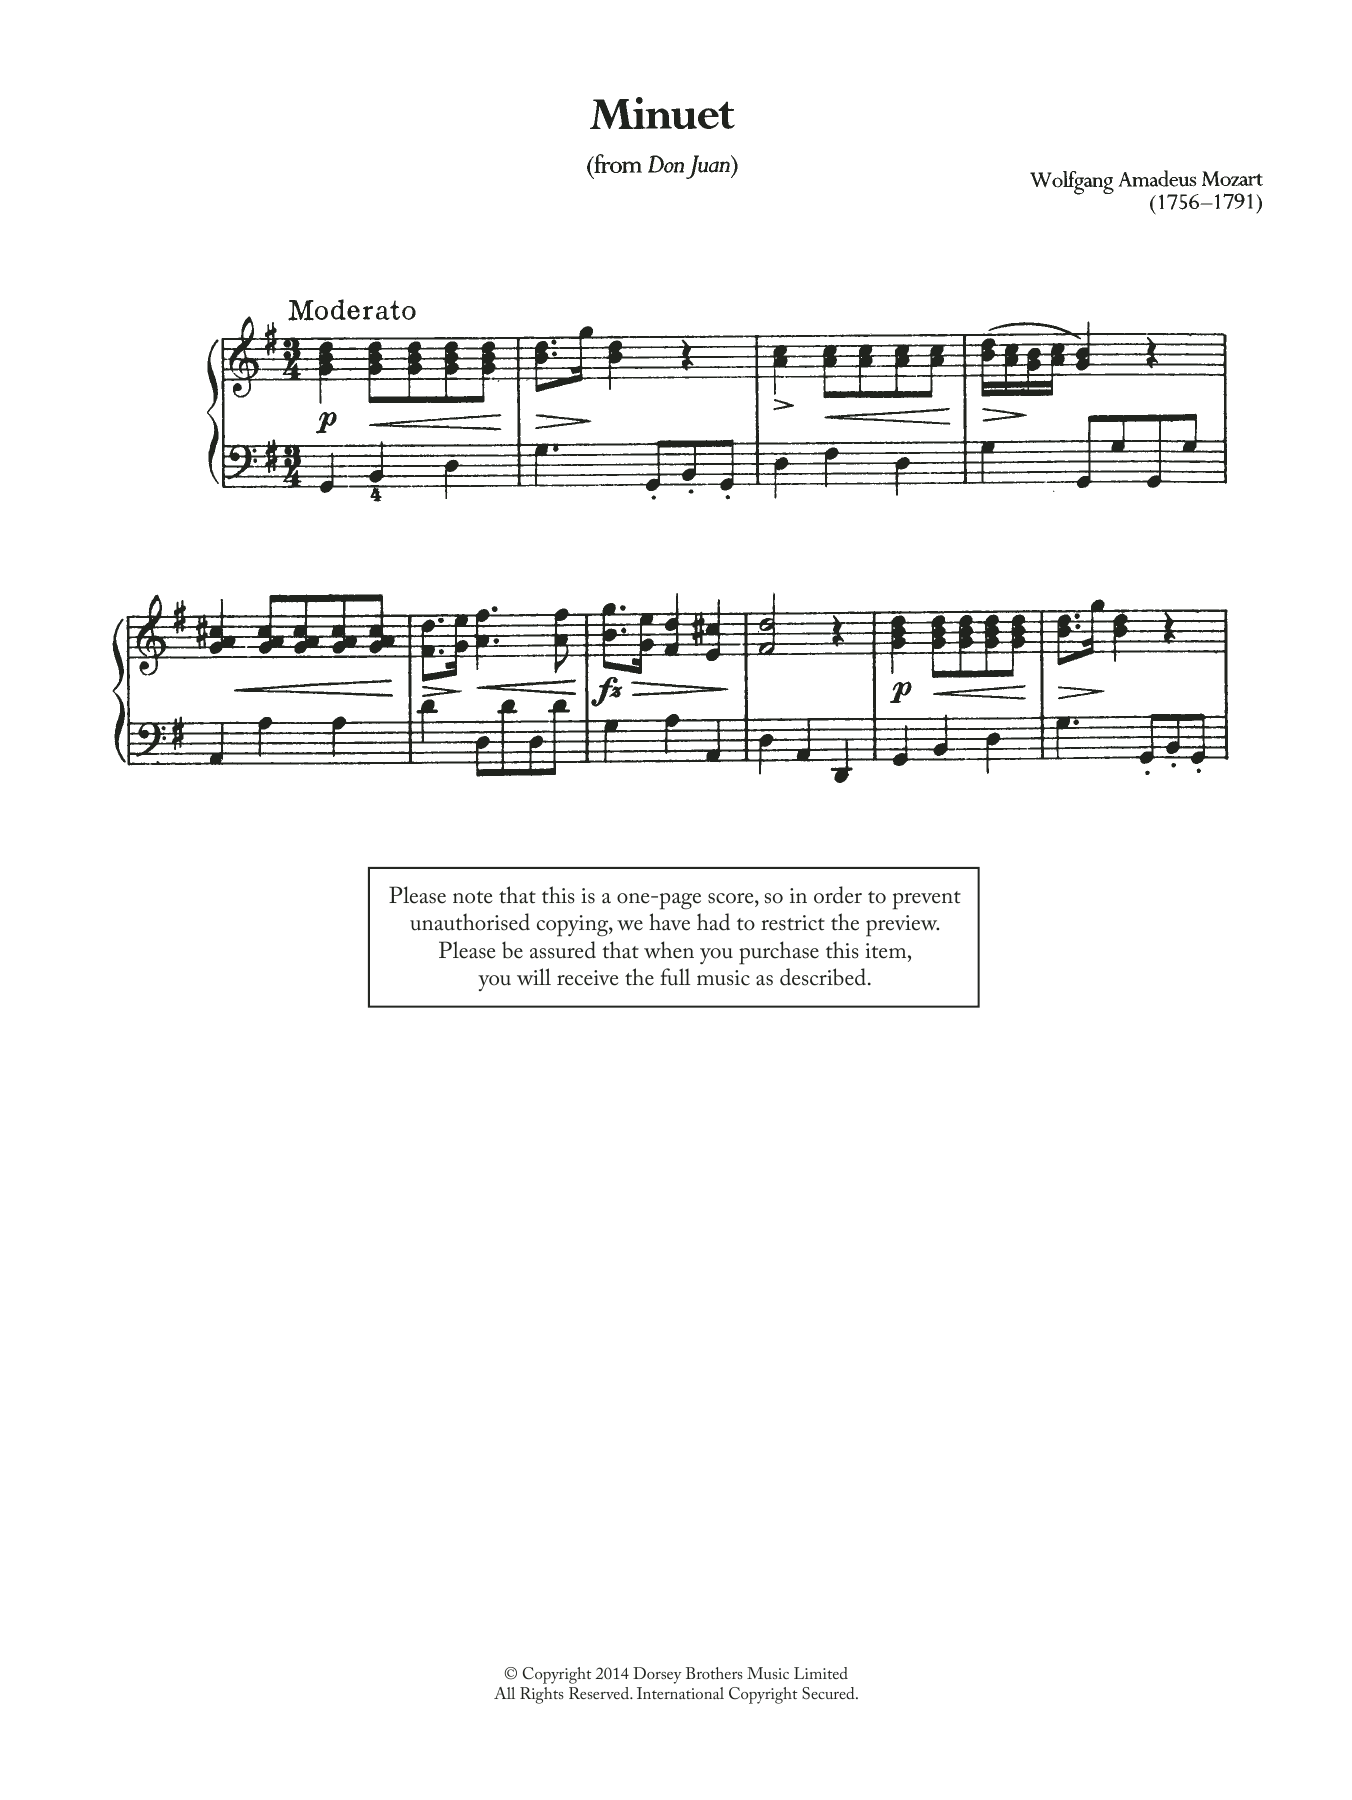 Download Wolfgang Amadeus Mozart Minuet (From 'Don Juan') Sheet Music